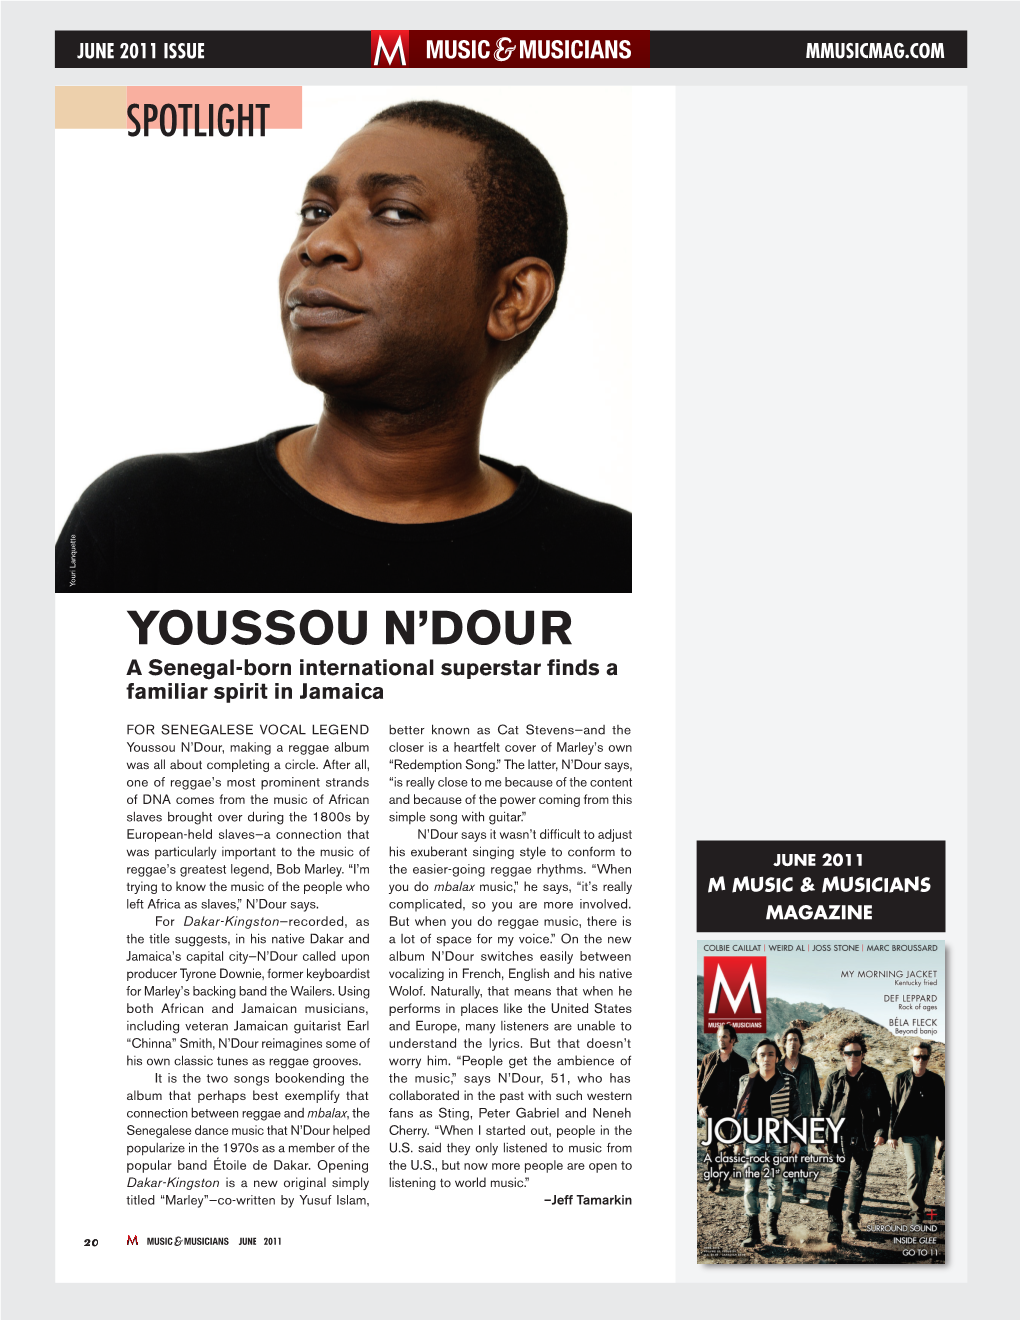 Youssou N'dour